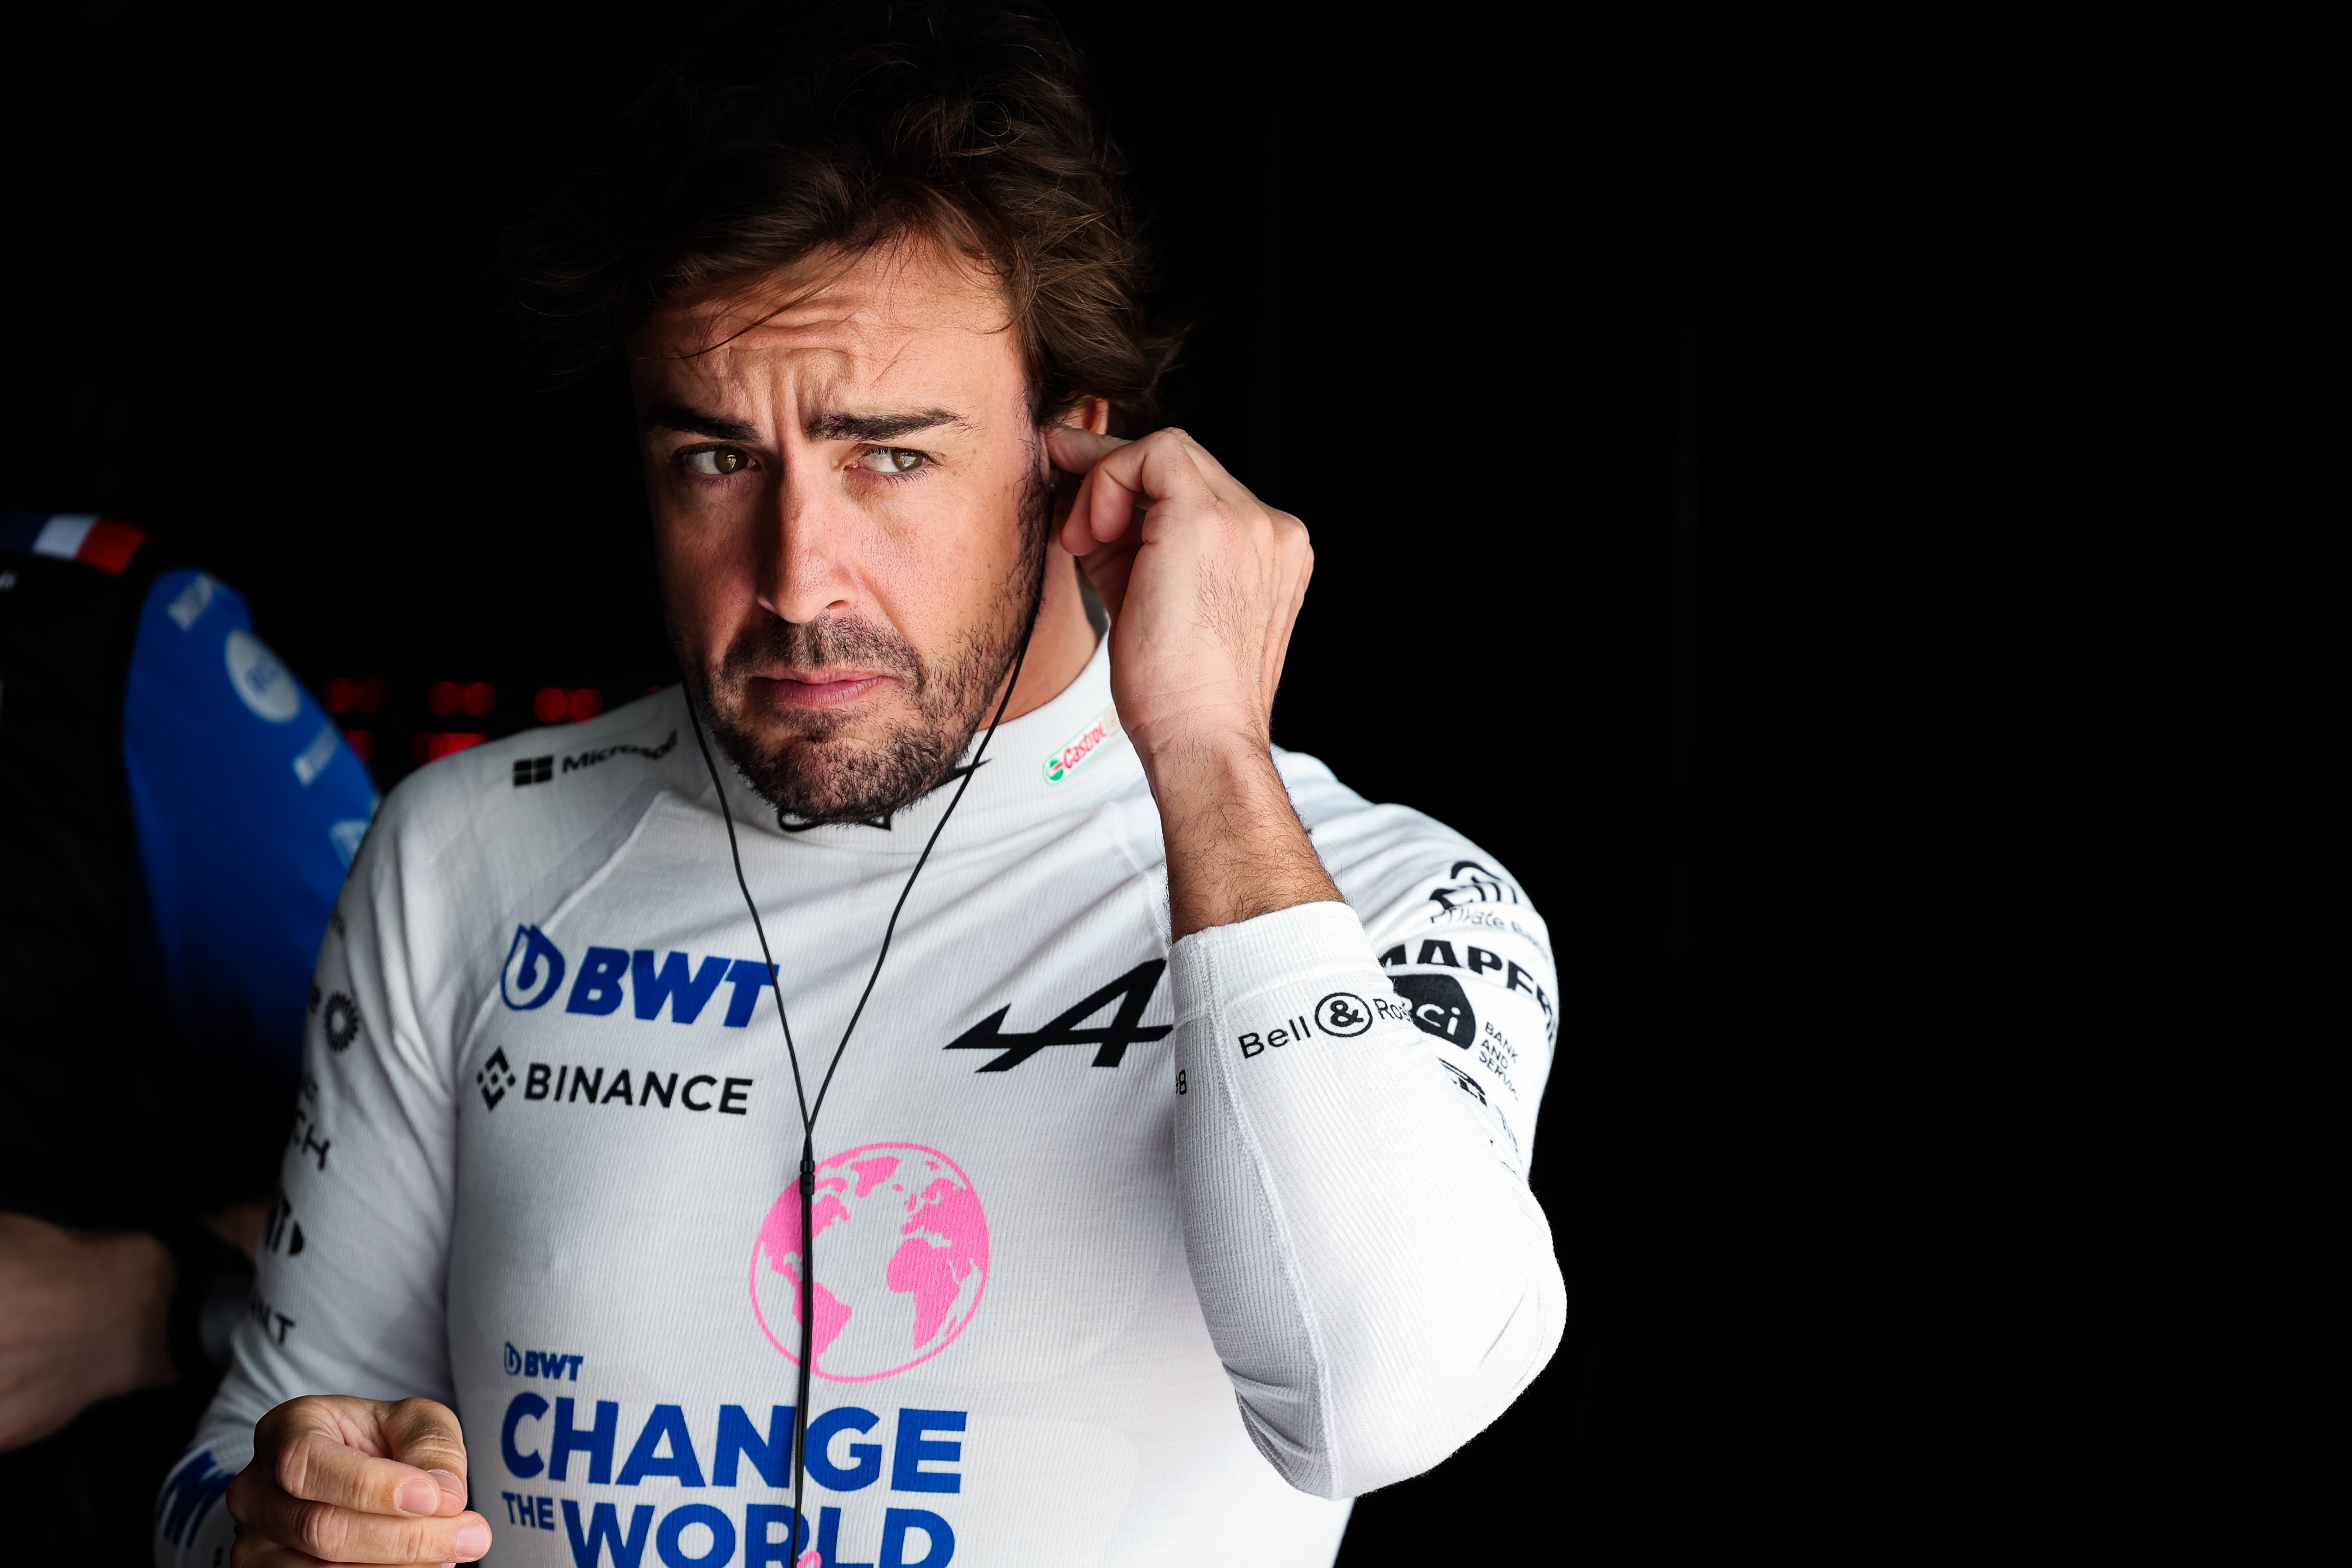 Bombazo!! Aston Martin anuncia el fichaje de Fernando Alonso en sustitución  de Vettel